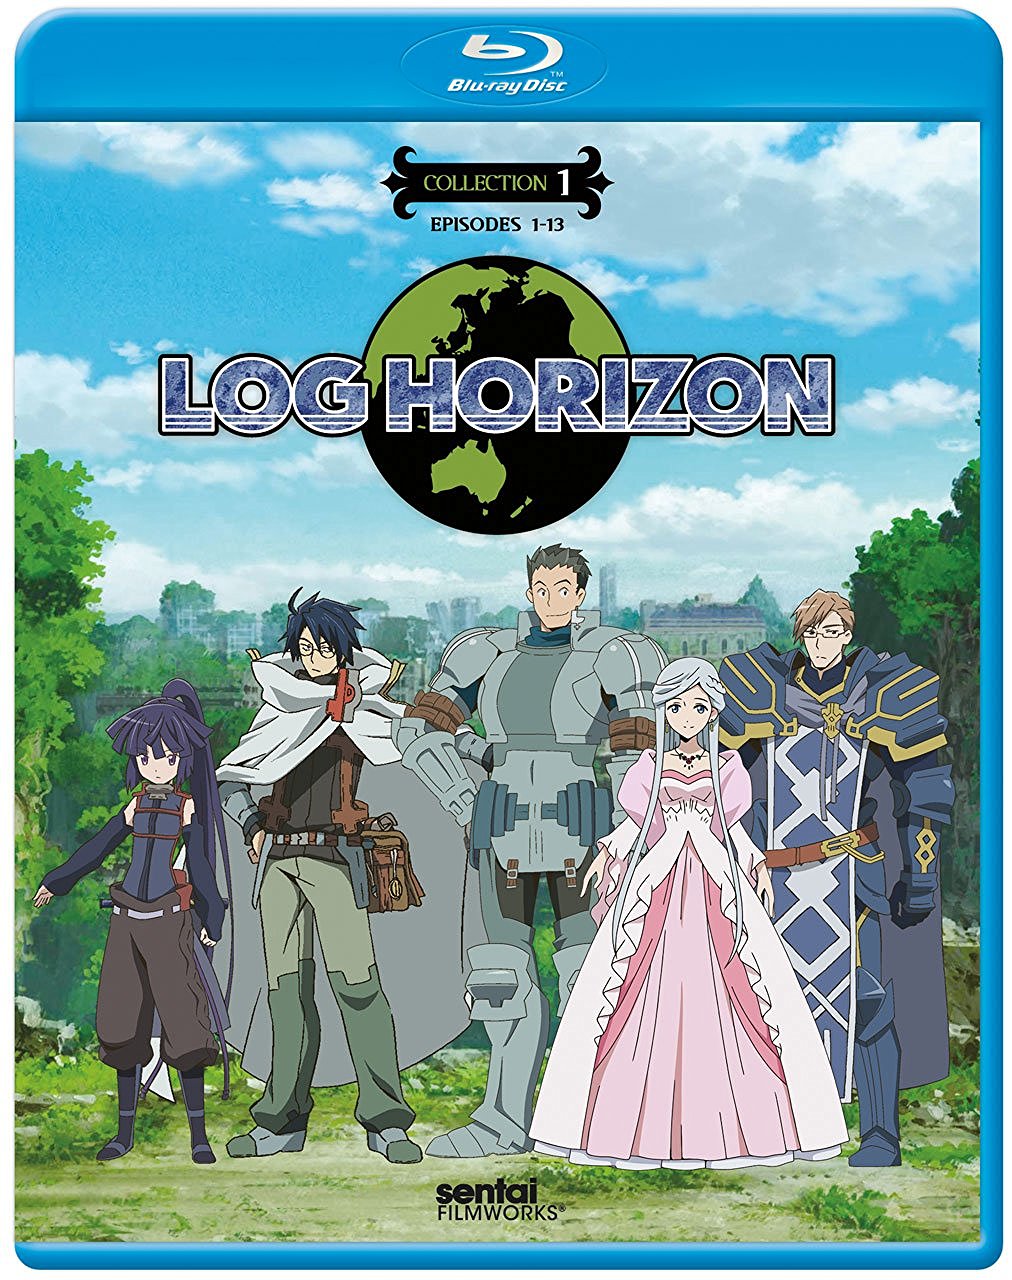 Log Horizon anime review – Spotty quality but enjoyable overall